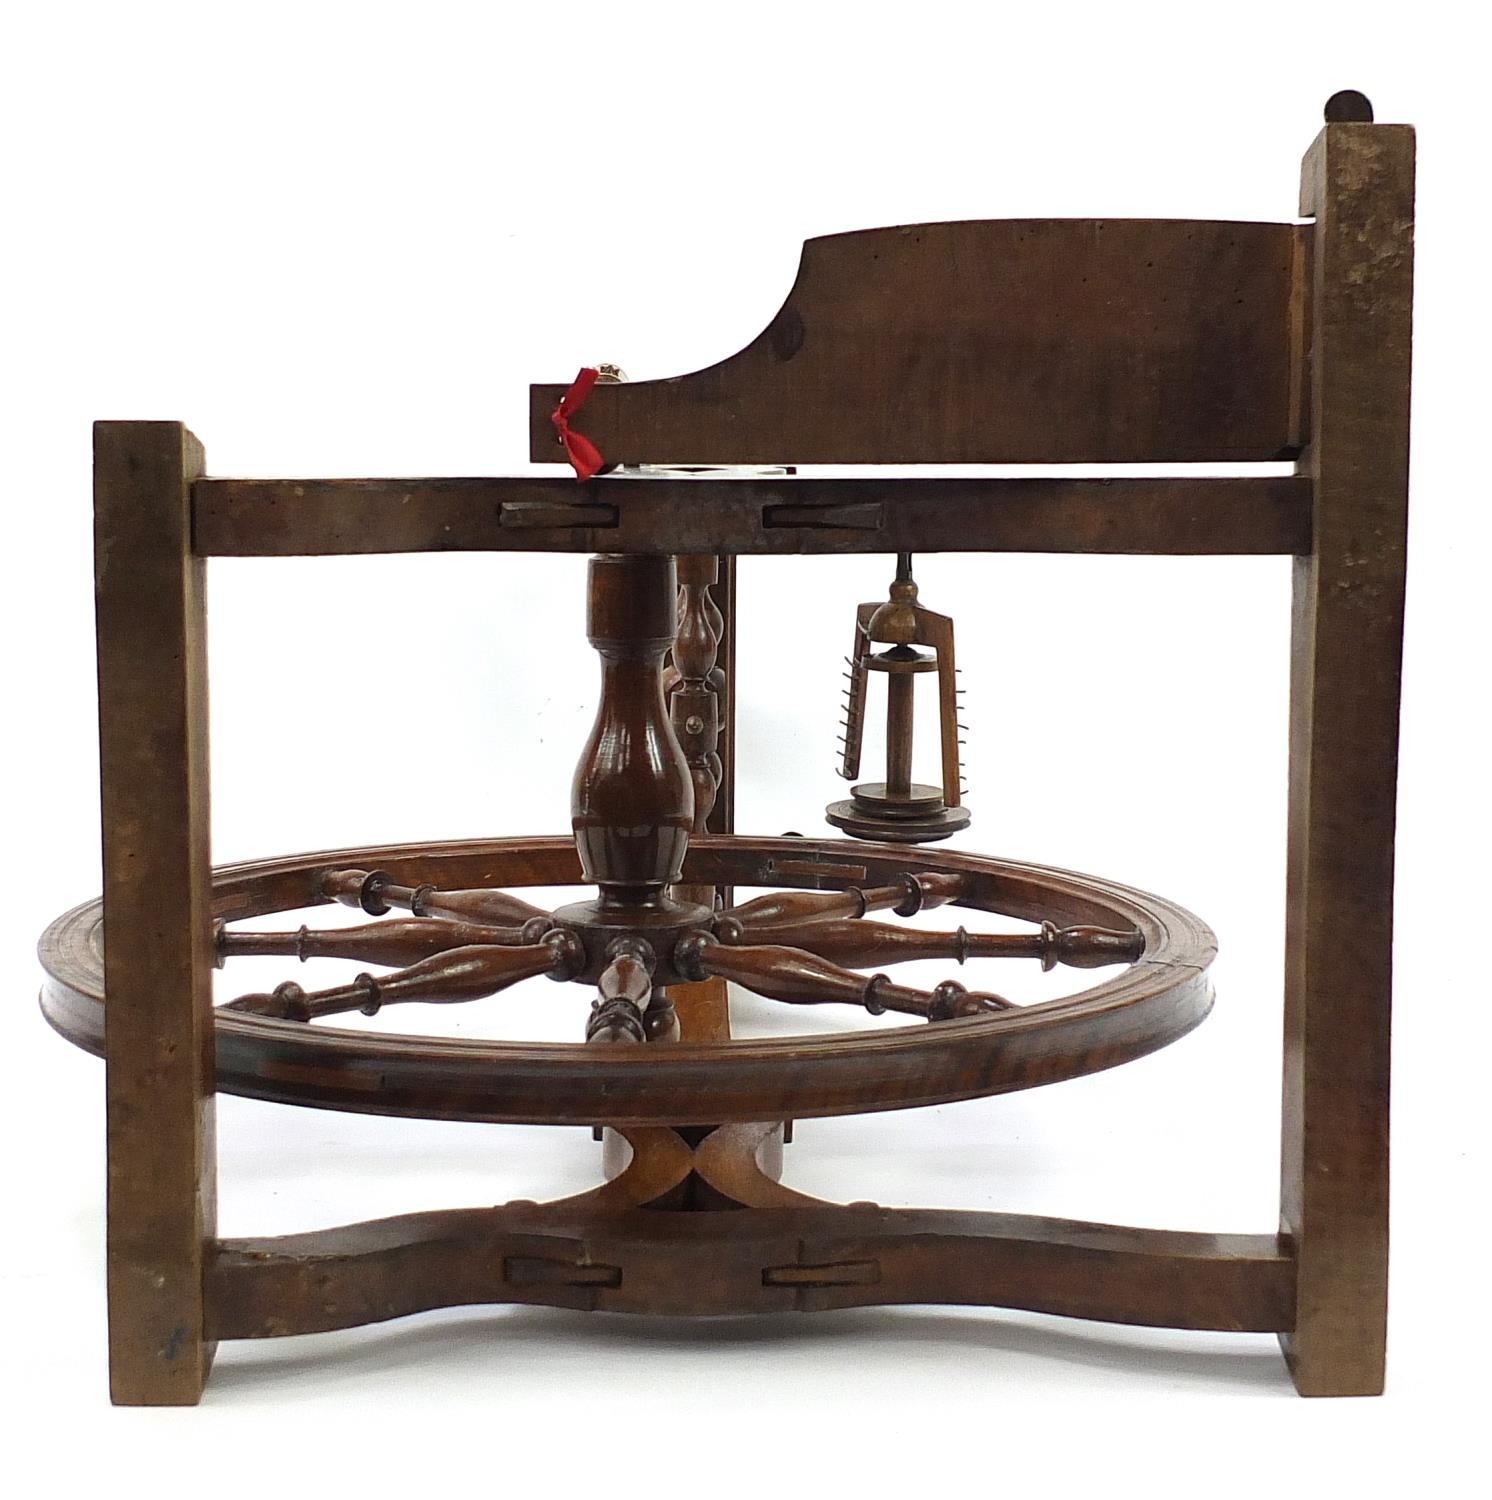 19th century wooden spinning wheel, 87cm high - Bild 3 aus 3